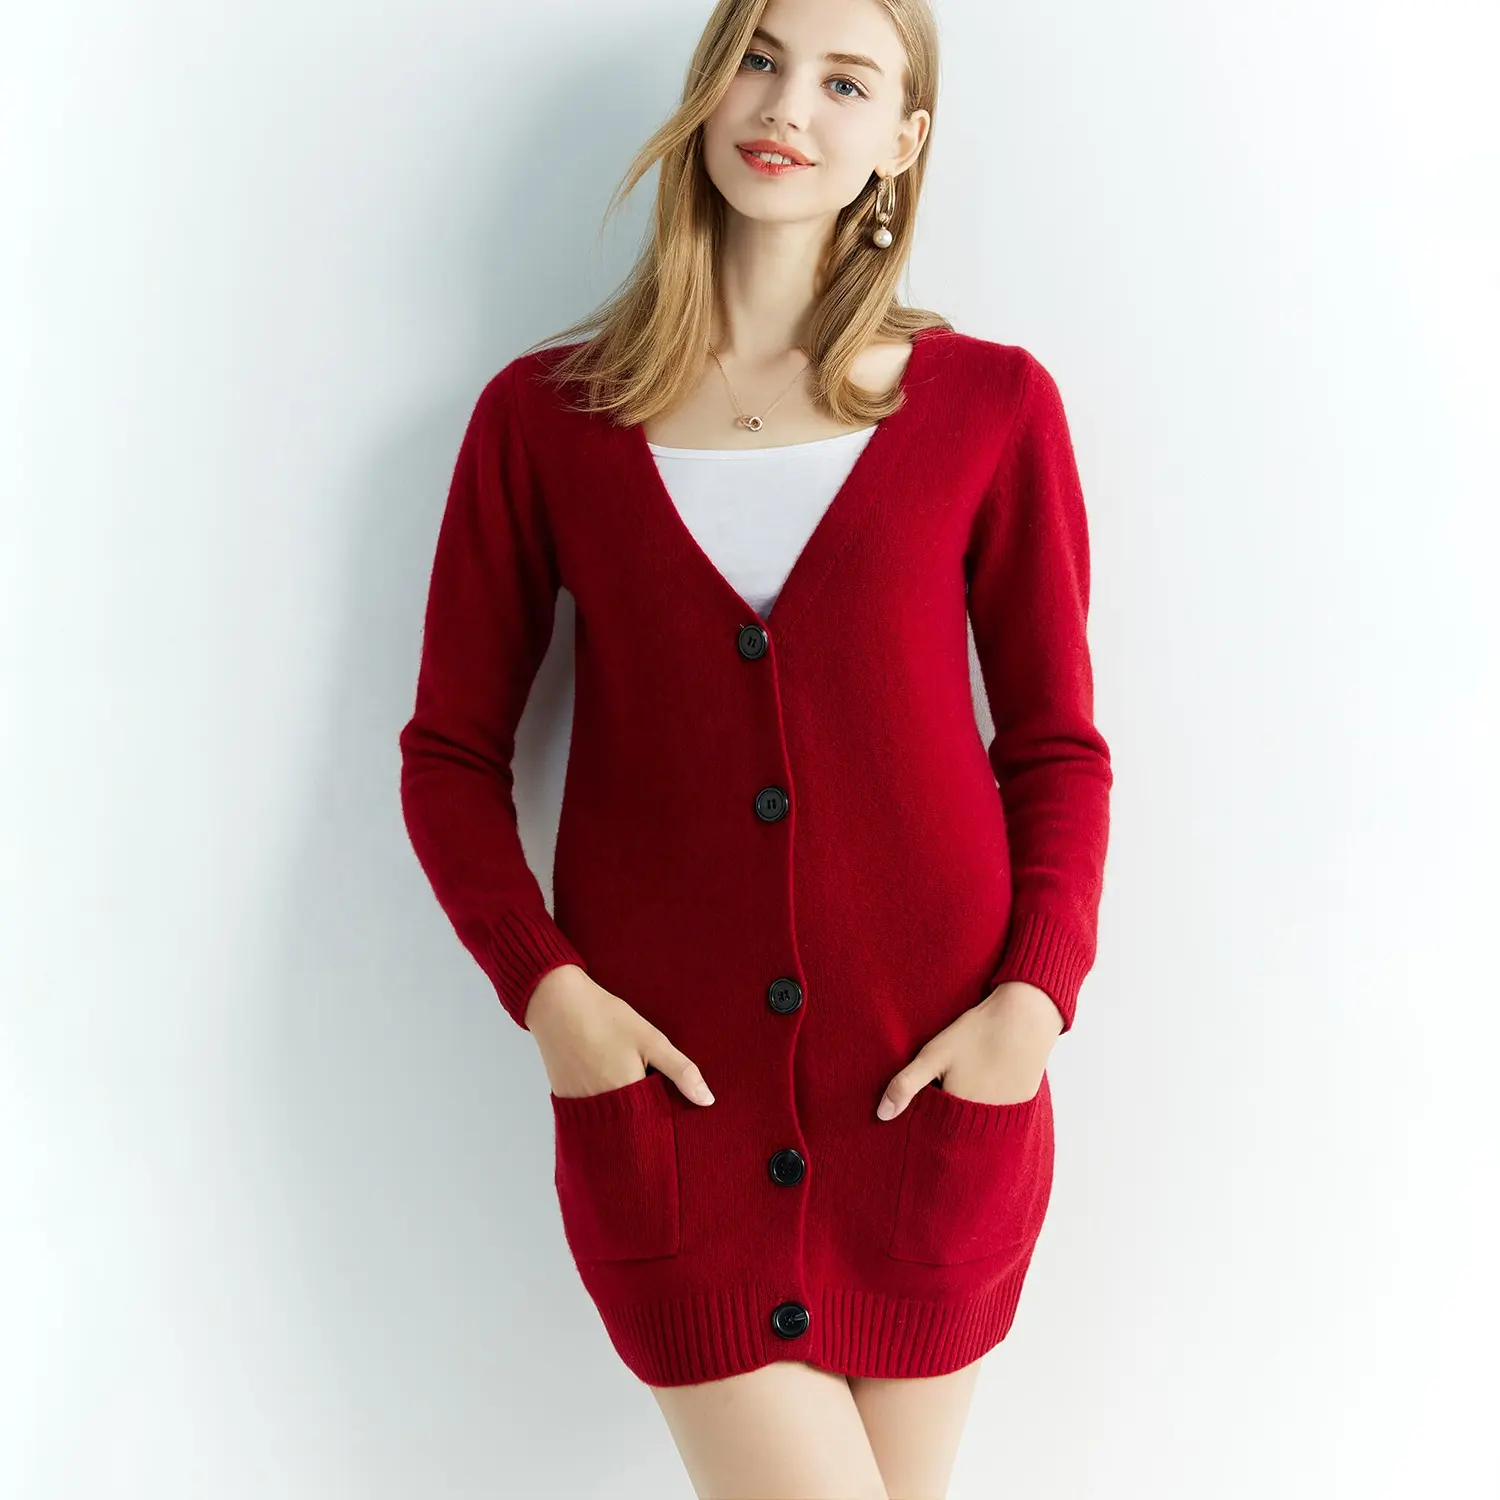 100% australie extrafine laine mérinos pull col en v femme chaud léger ajustement tricoté laine Cardigan